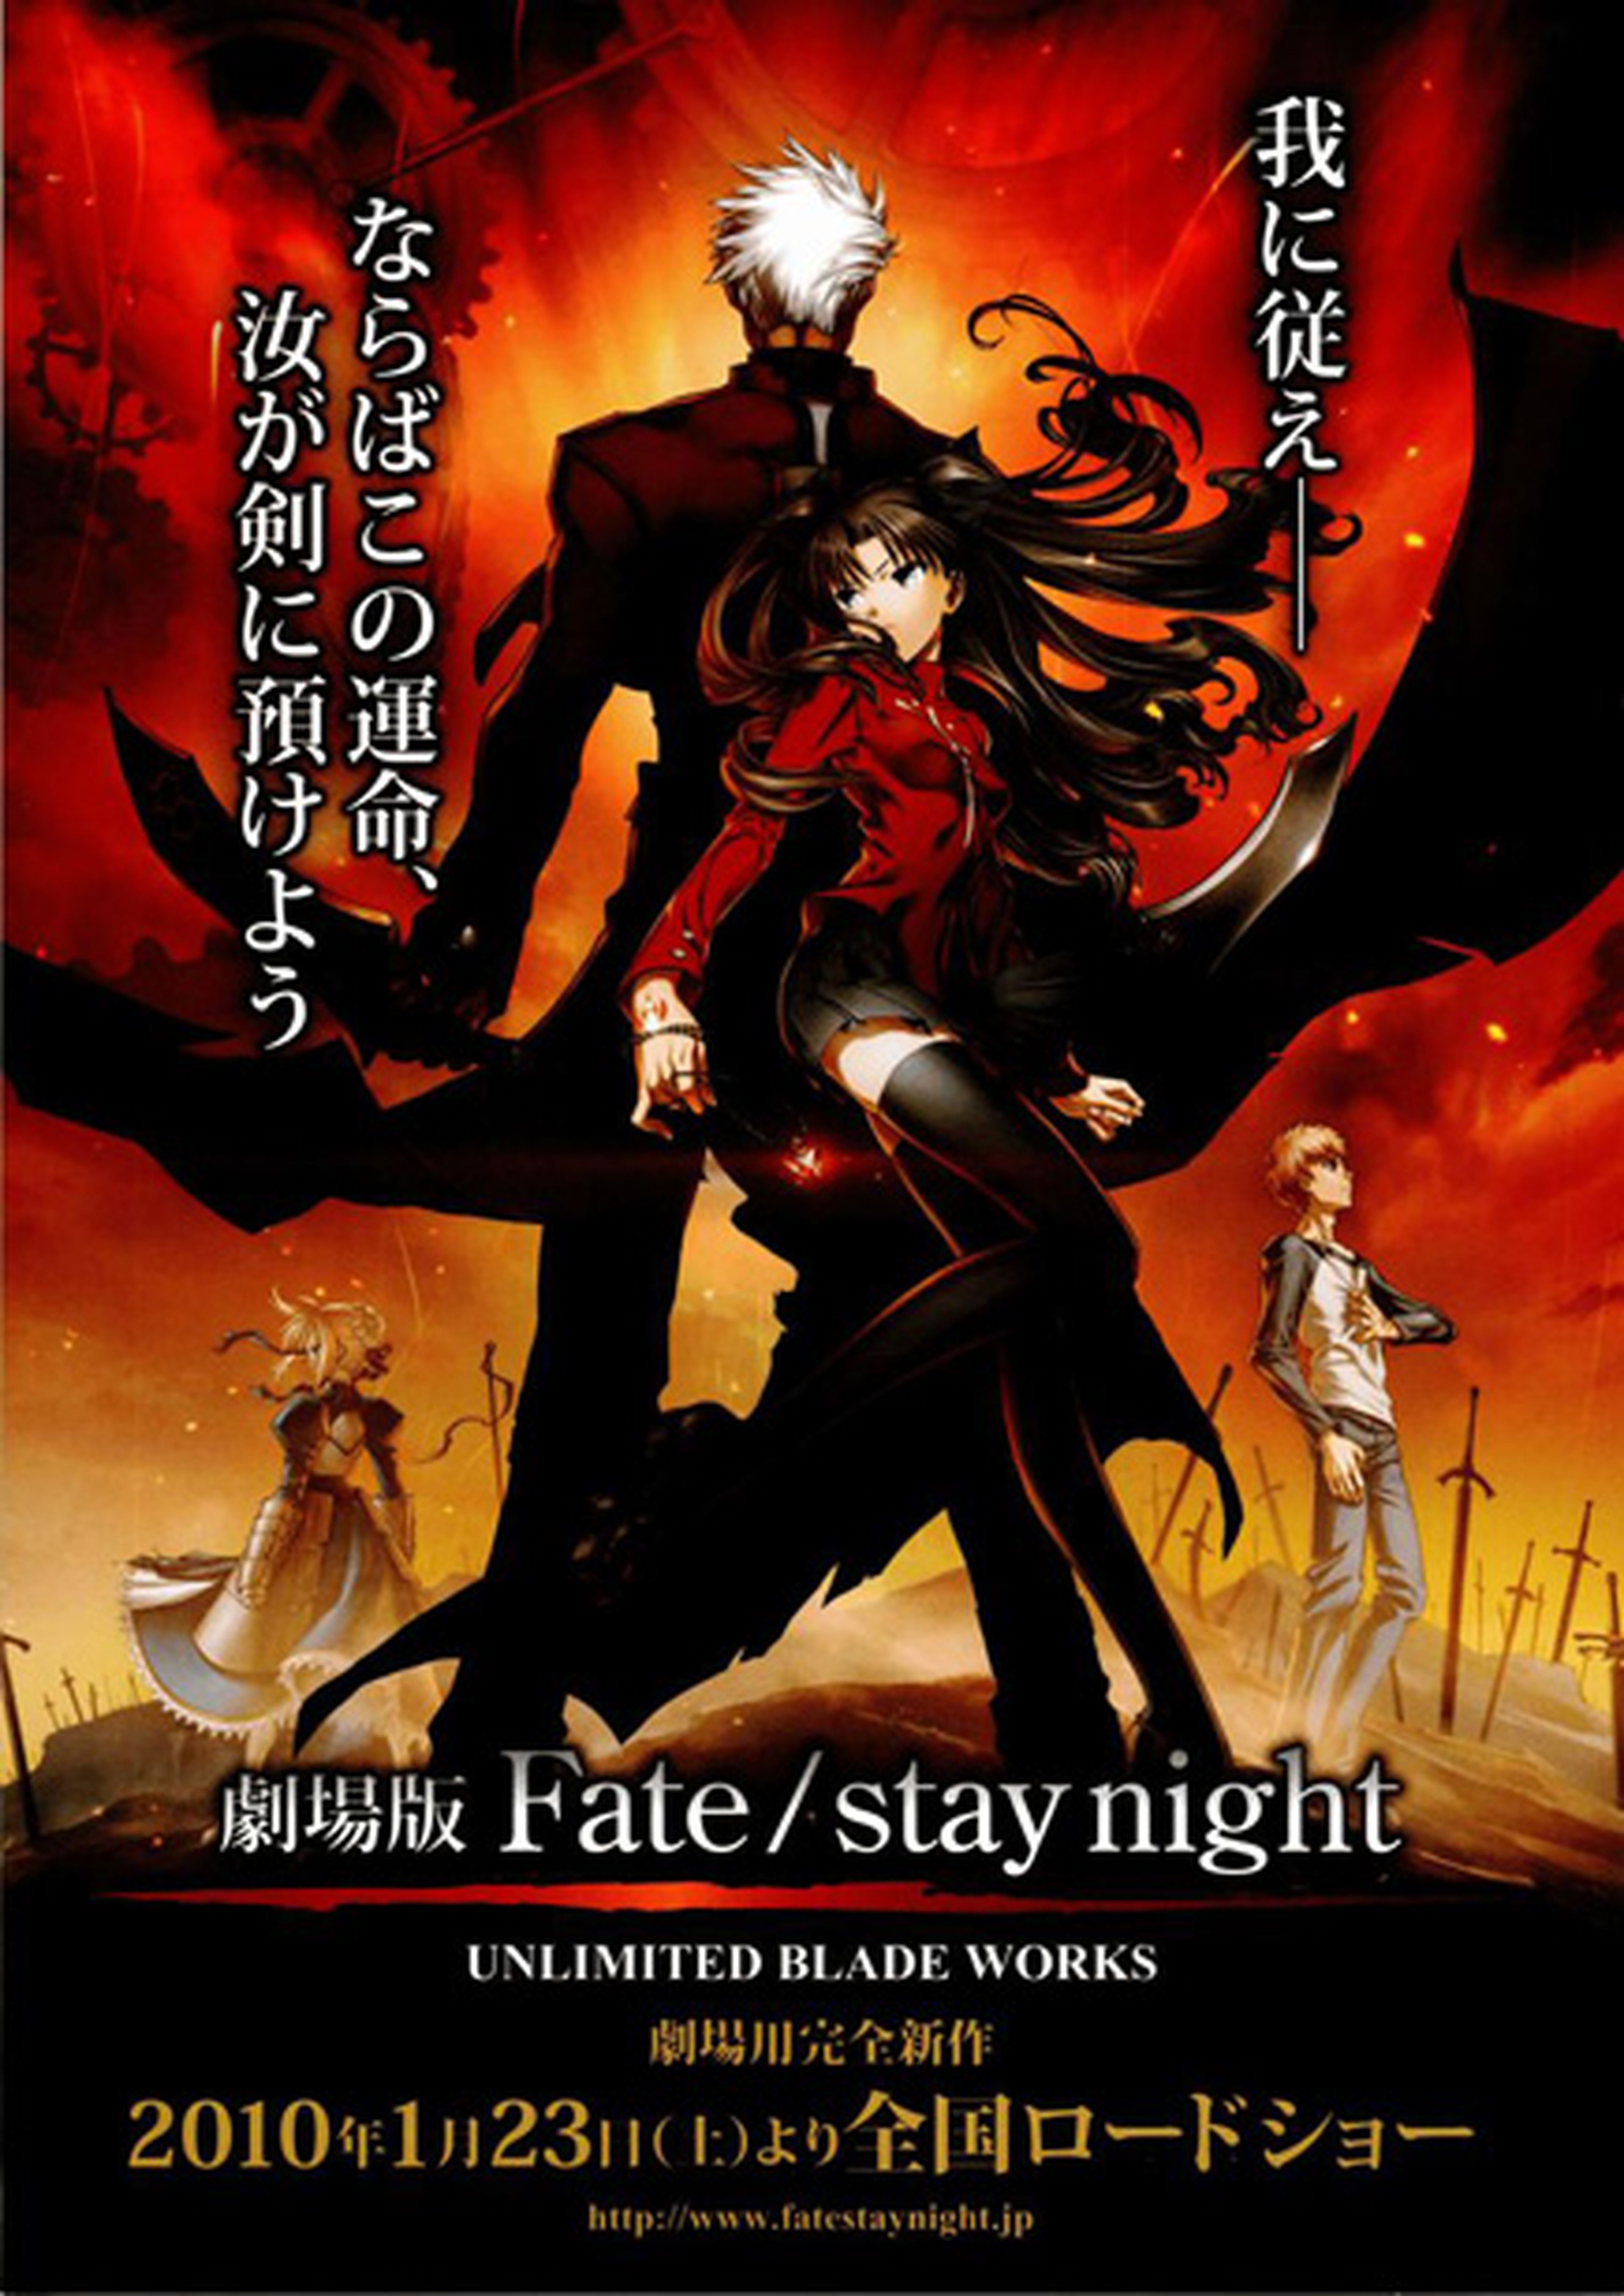 El film de Fate/Stay Night no llegará a España